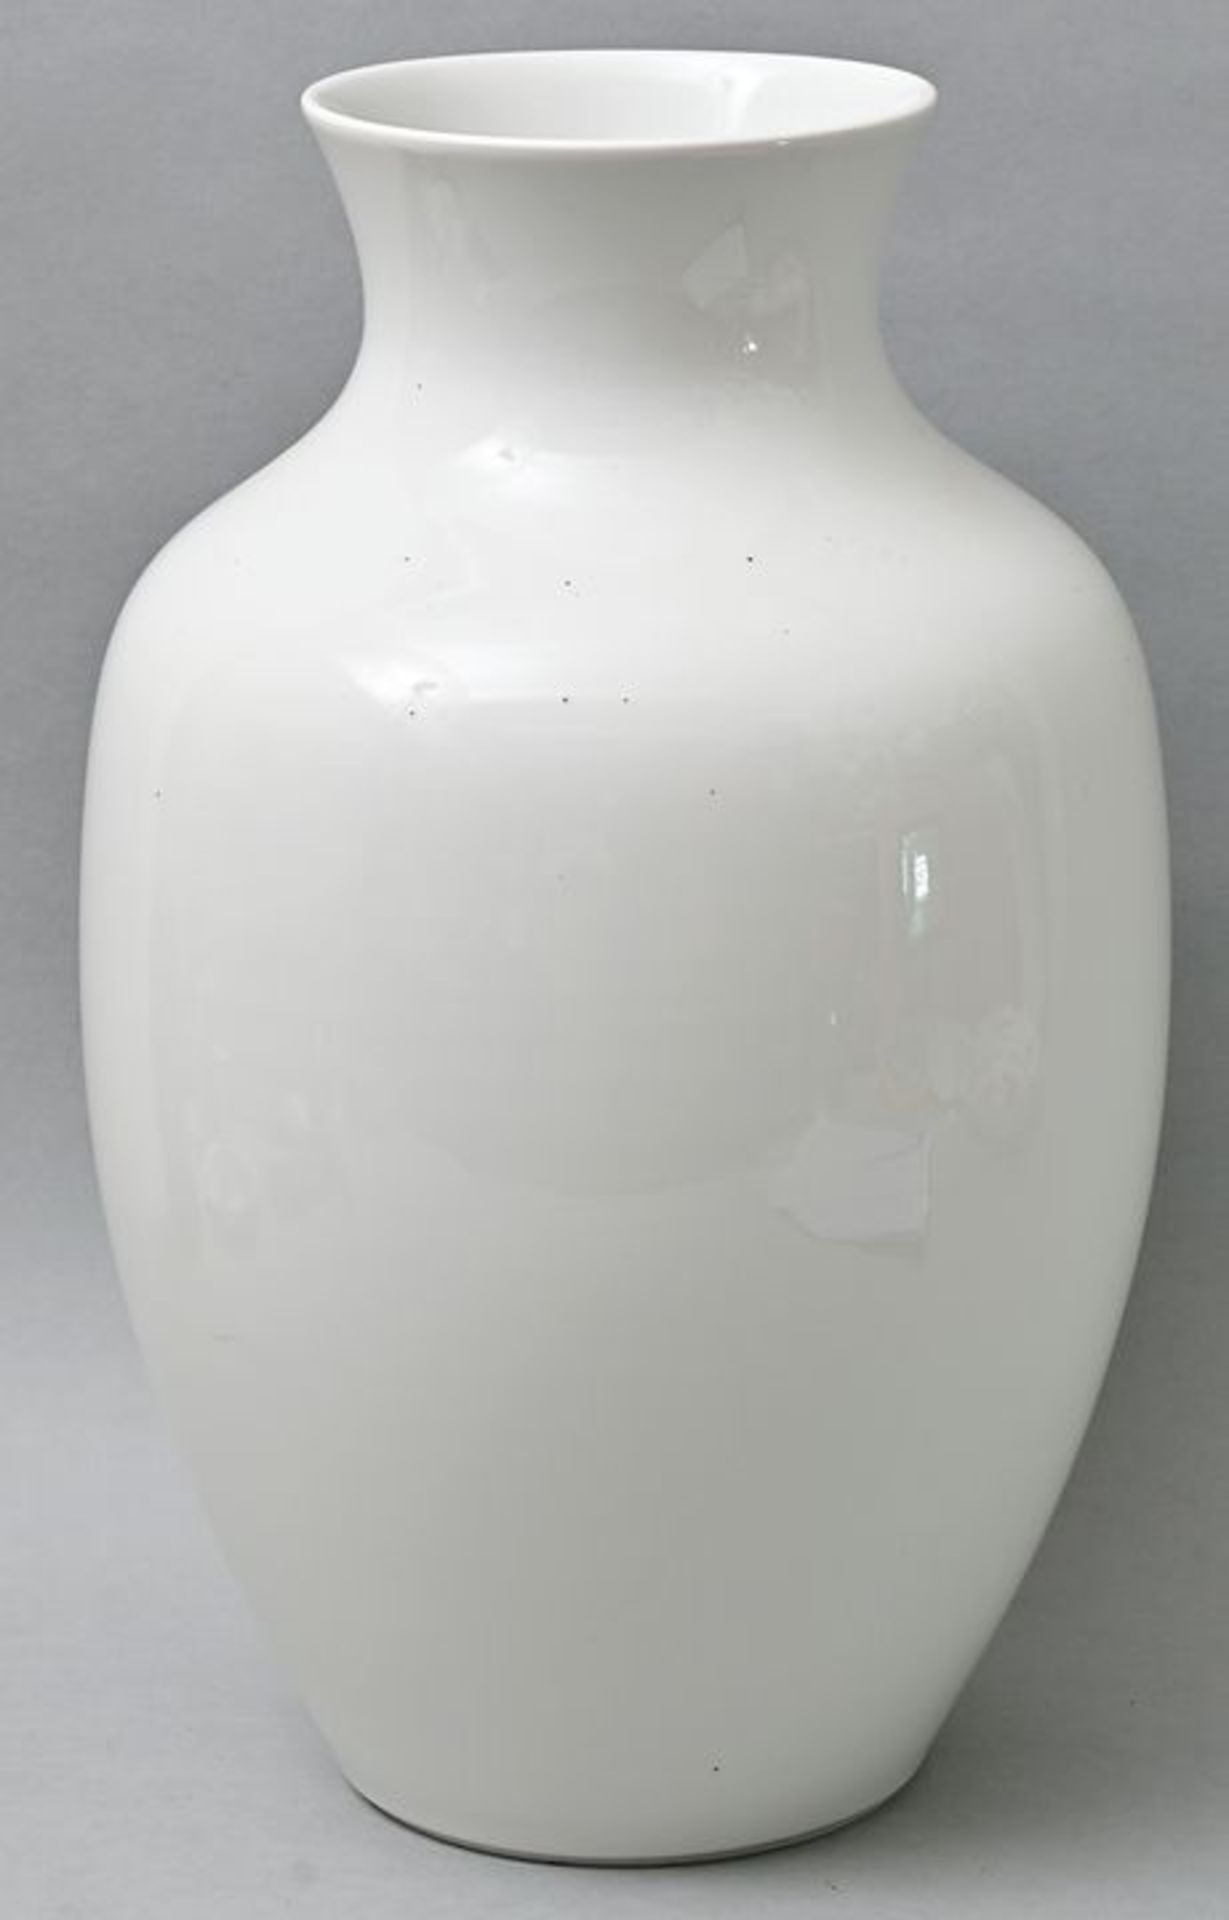 Meissen weiß/ white porcelain vase - Bild 2 aus 5